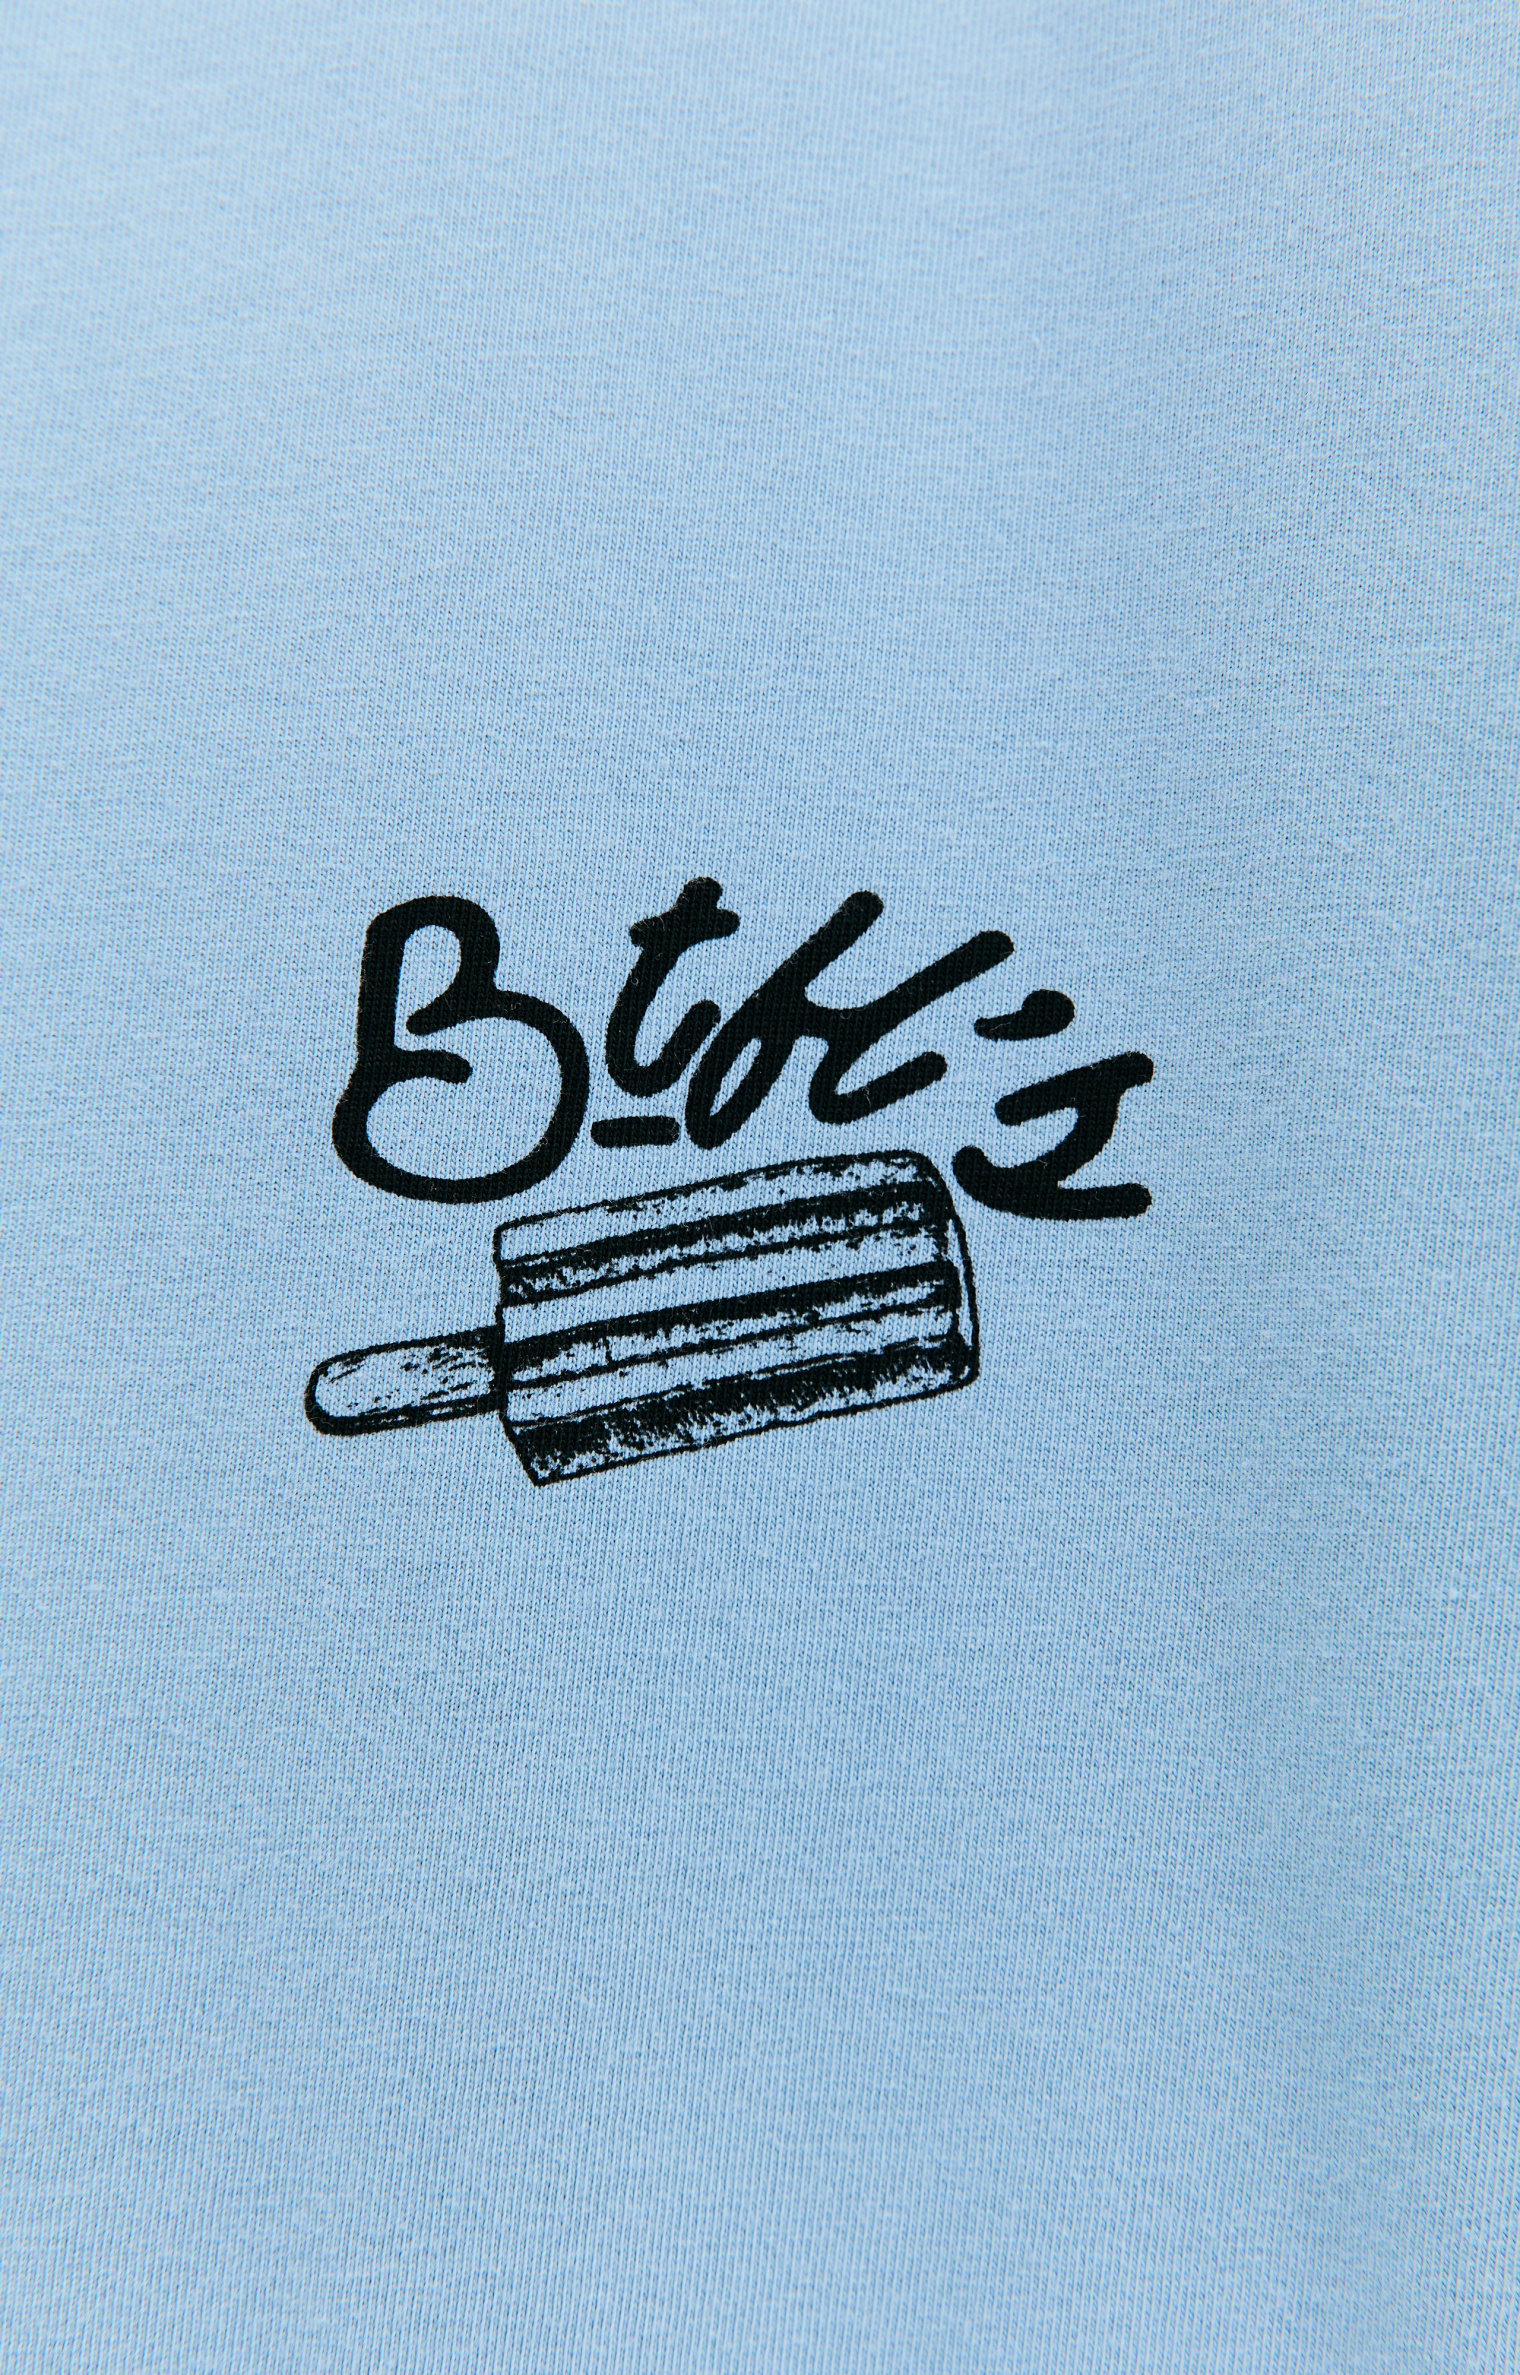 BTFL Paleta printed t-shirt